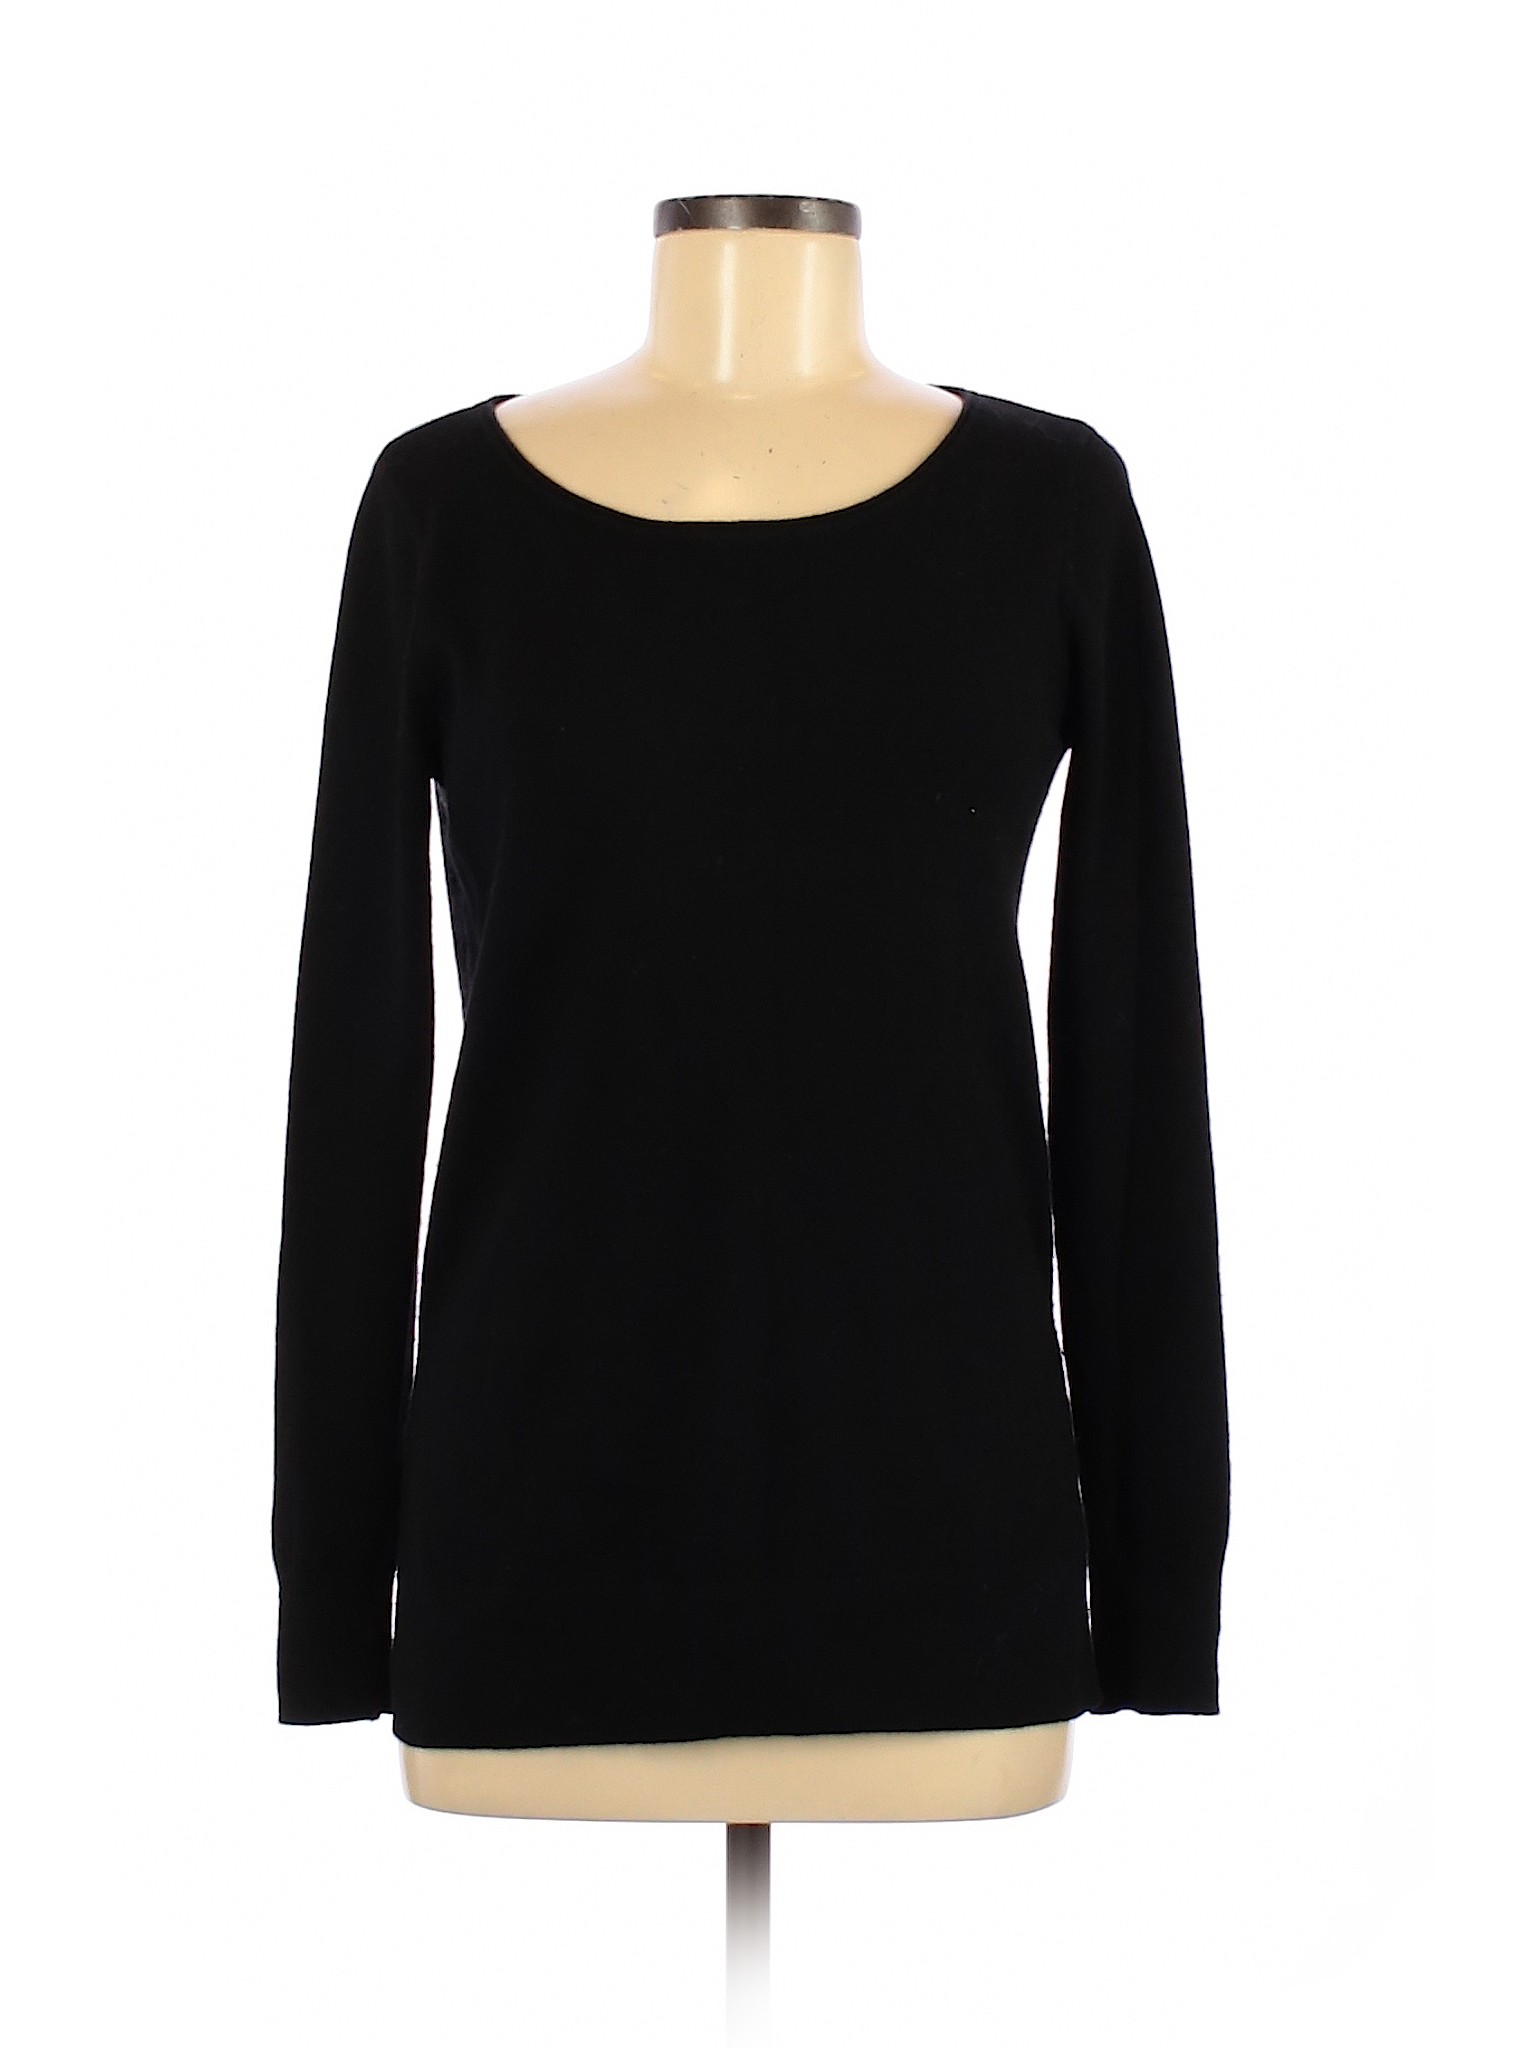 Club Monaco Women Black Cashmere Pullover Sweater M | eBay